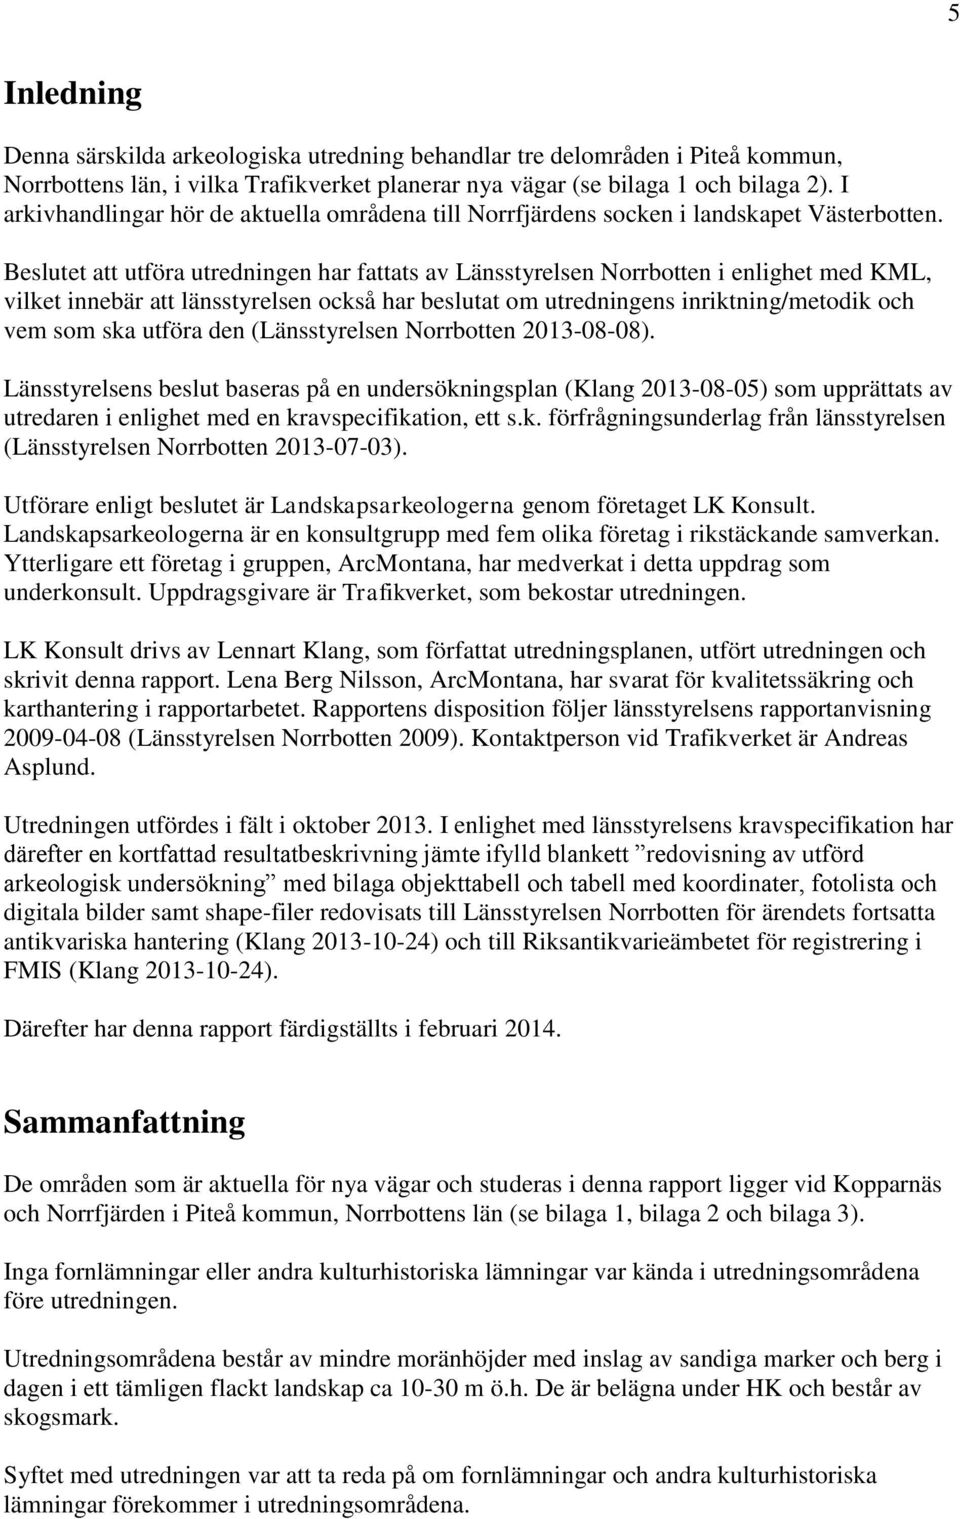 Beslutet att utföra utredningen har fattats av Länsstyrelsen Norrbotten i enlighet med KML, vilket innebär att länsstyrelsen också har beslutat om utredningens inriktning/metodik och vem som ska